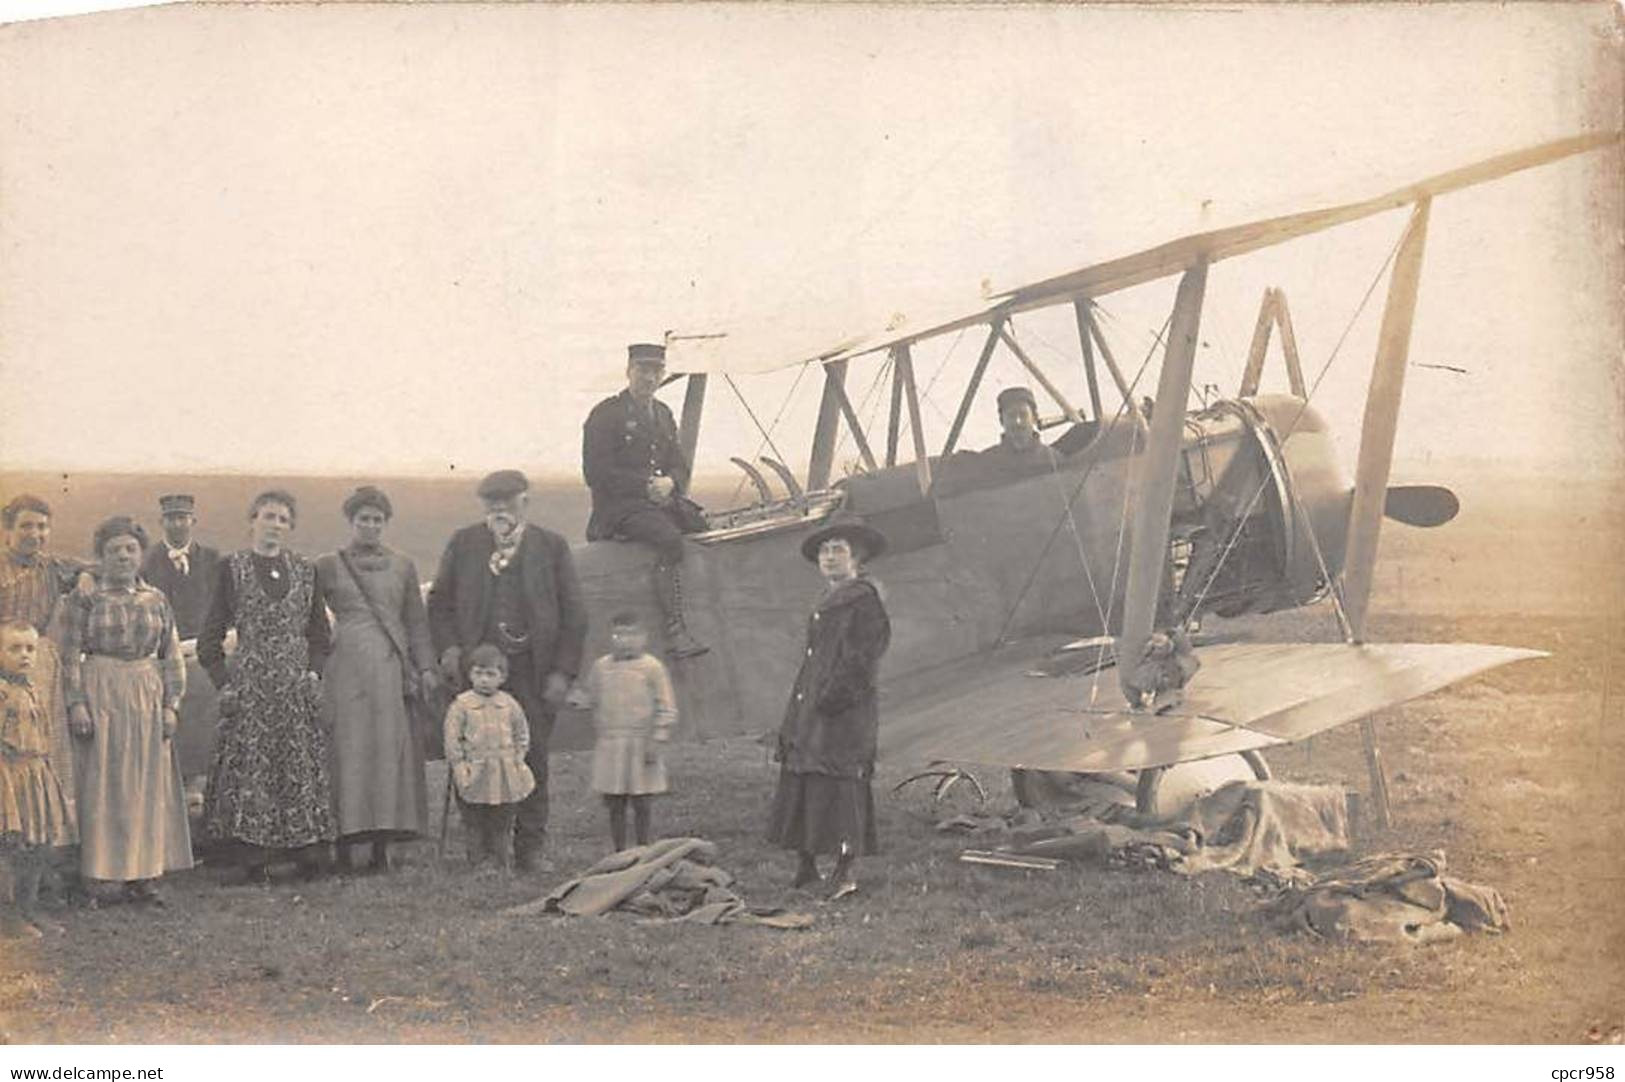 Aviation - N°80506 - Groupe D'hommes, De Femmes Et D'enfants Autour D'un Avion Dans Un Champ - Carte Photo à Localiser - 1939-1945: 2de Wereldoorlog